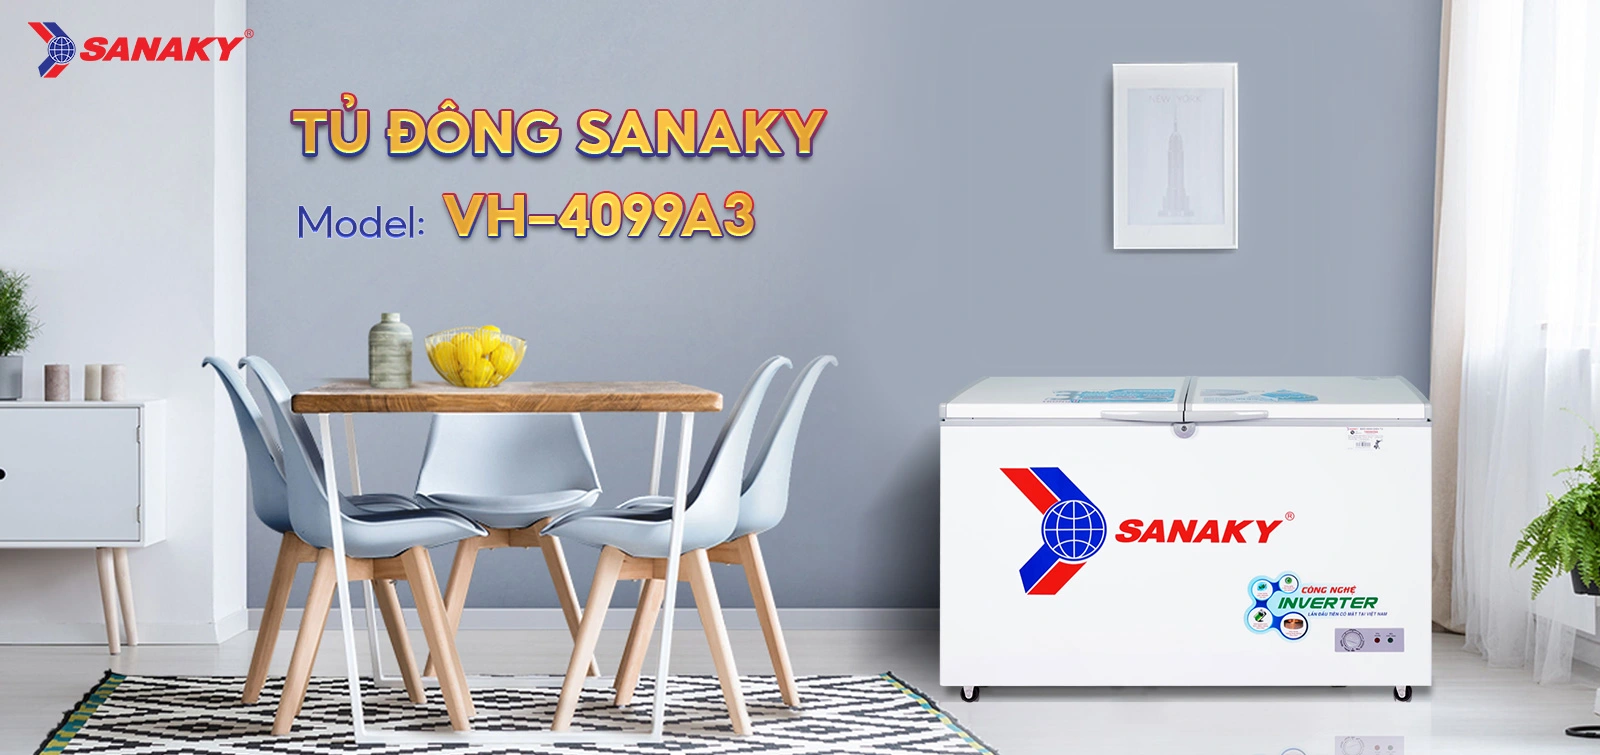 Tủ Đông Sanaky VH-4099A3